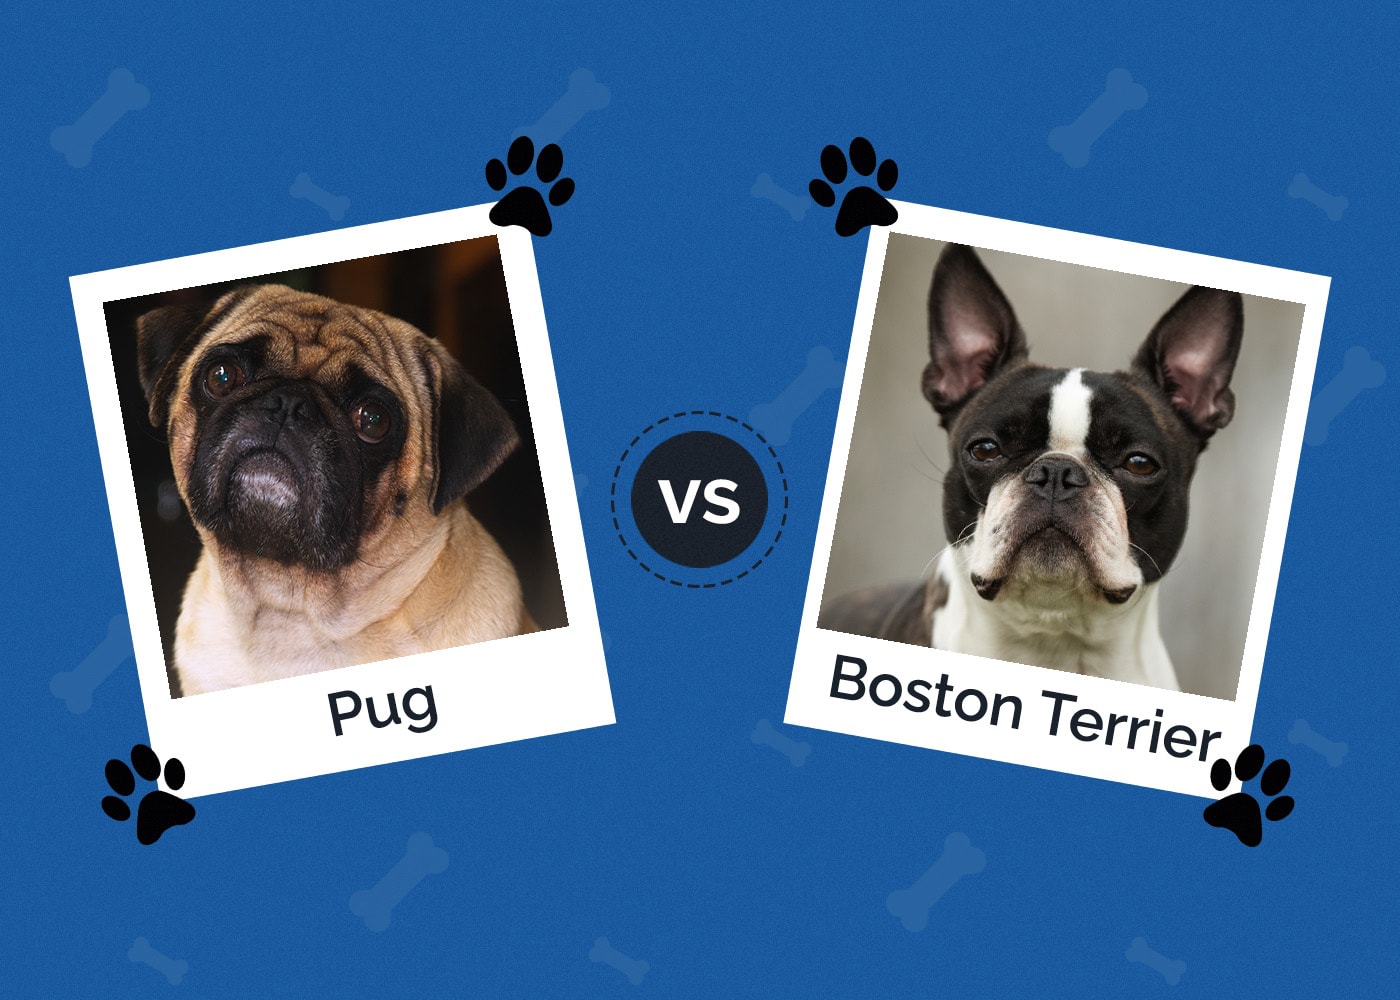 Pug vs Boston Terrier